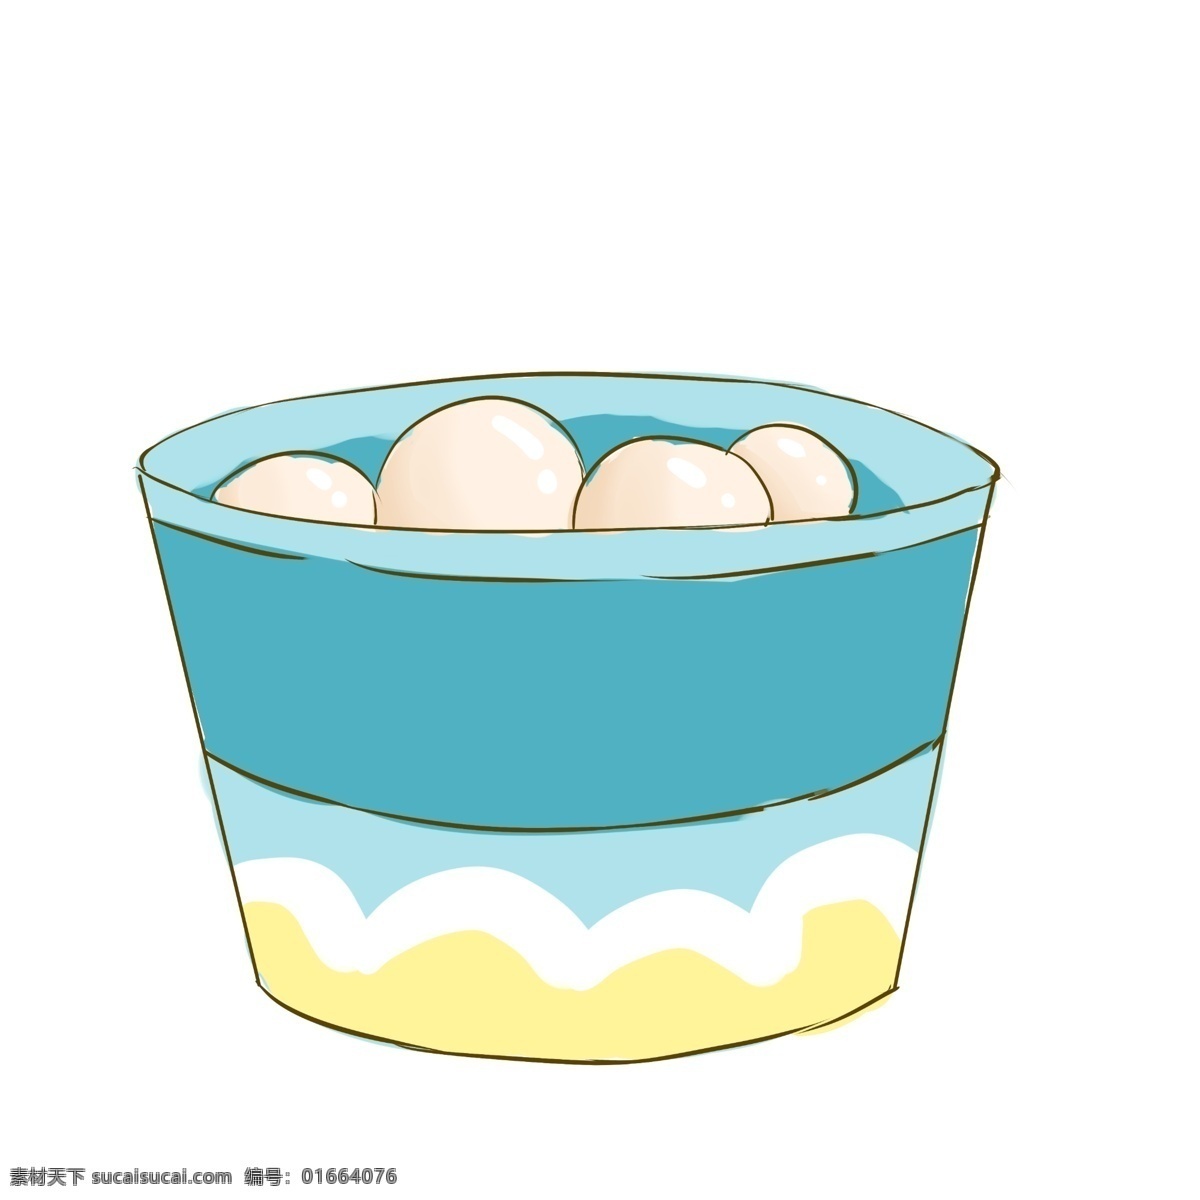 白色 鸡蛋 装饰 插画 白色的鸡蛋 营养鸡蛋 漂亮的鸡蛋 创意鸡蛋 美味的鸡蛋 鸡蛋装饰 鸡蛋插画